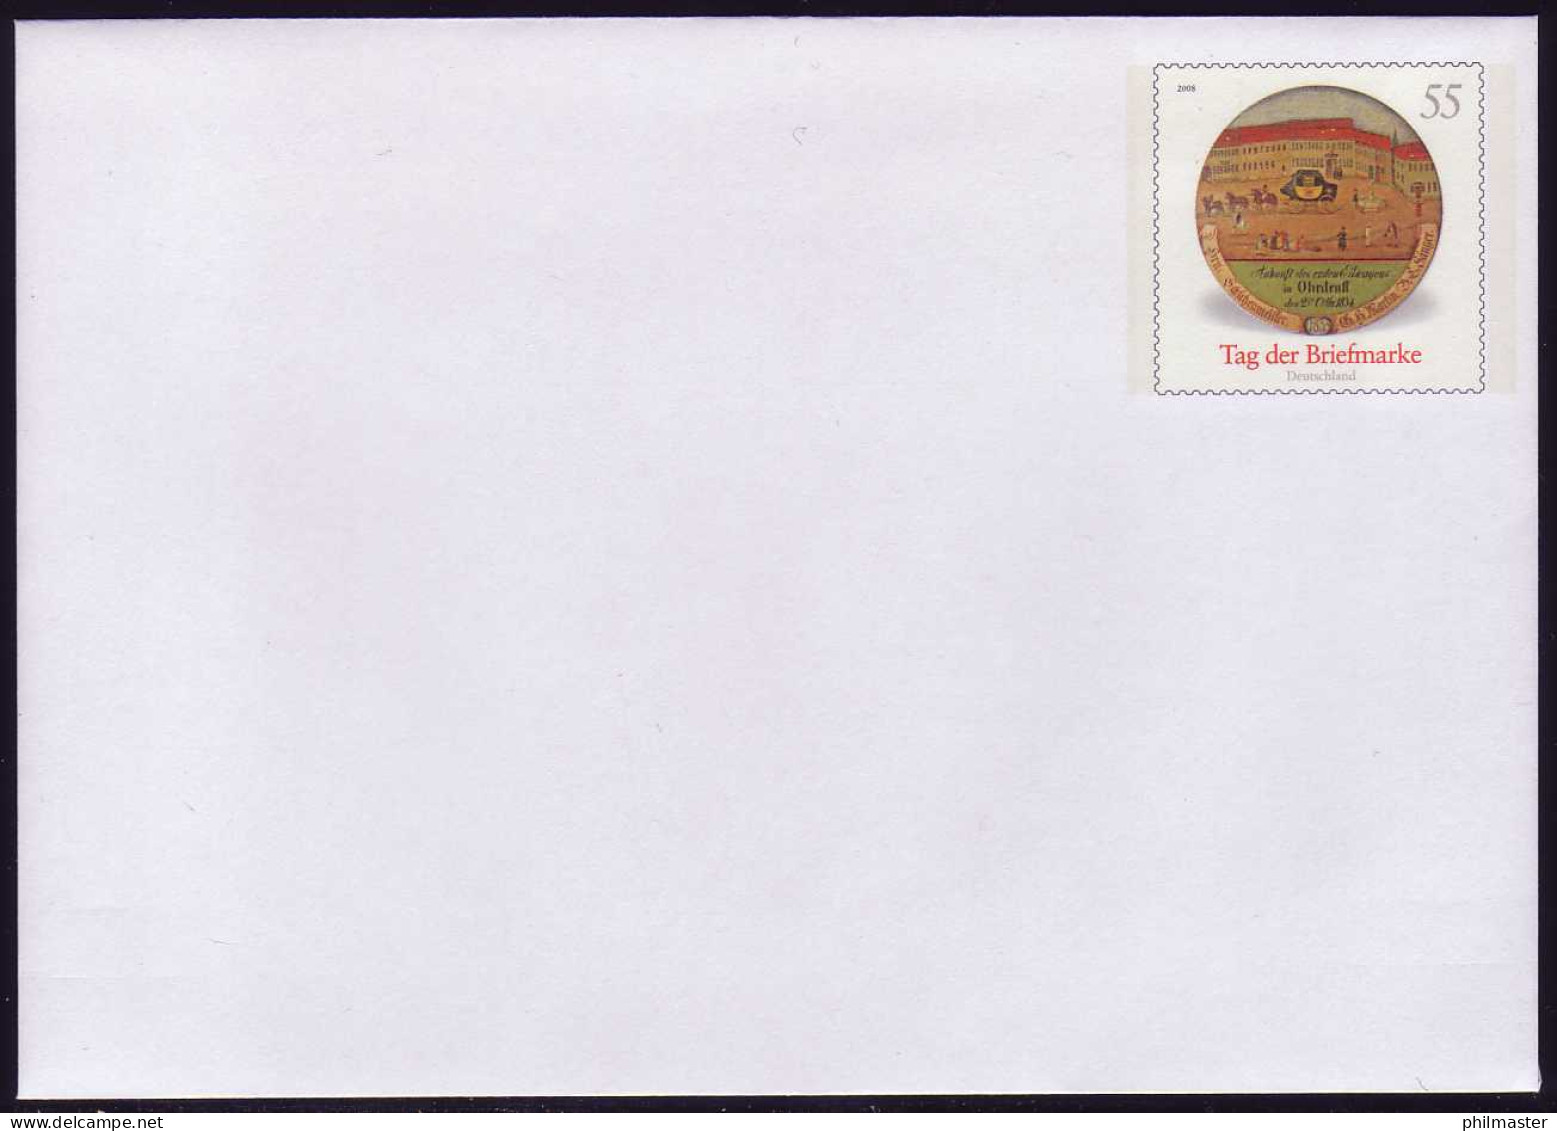 USo 163 Tag Der Briefmarke 2008, ** Postfrisch - Enveloppes - Neuves